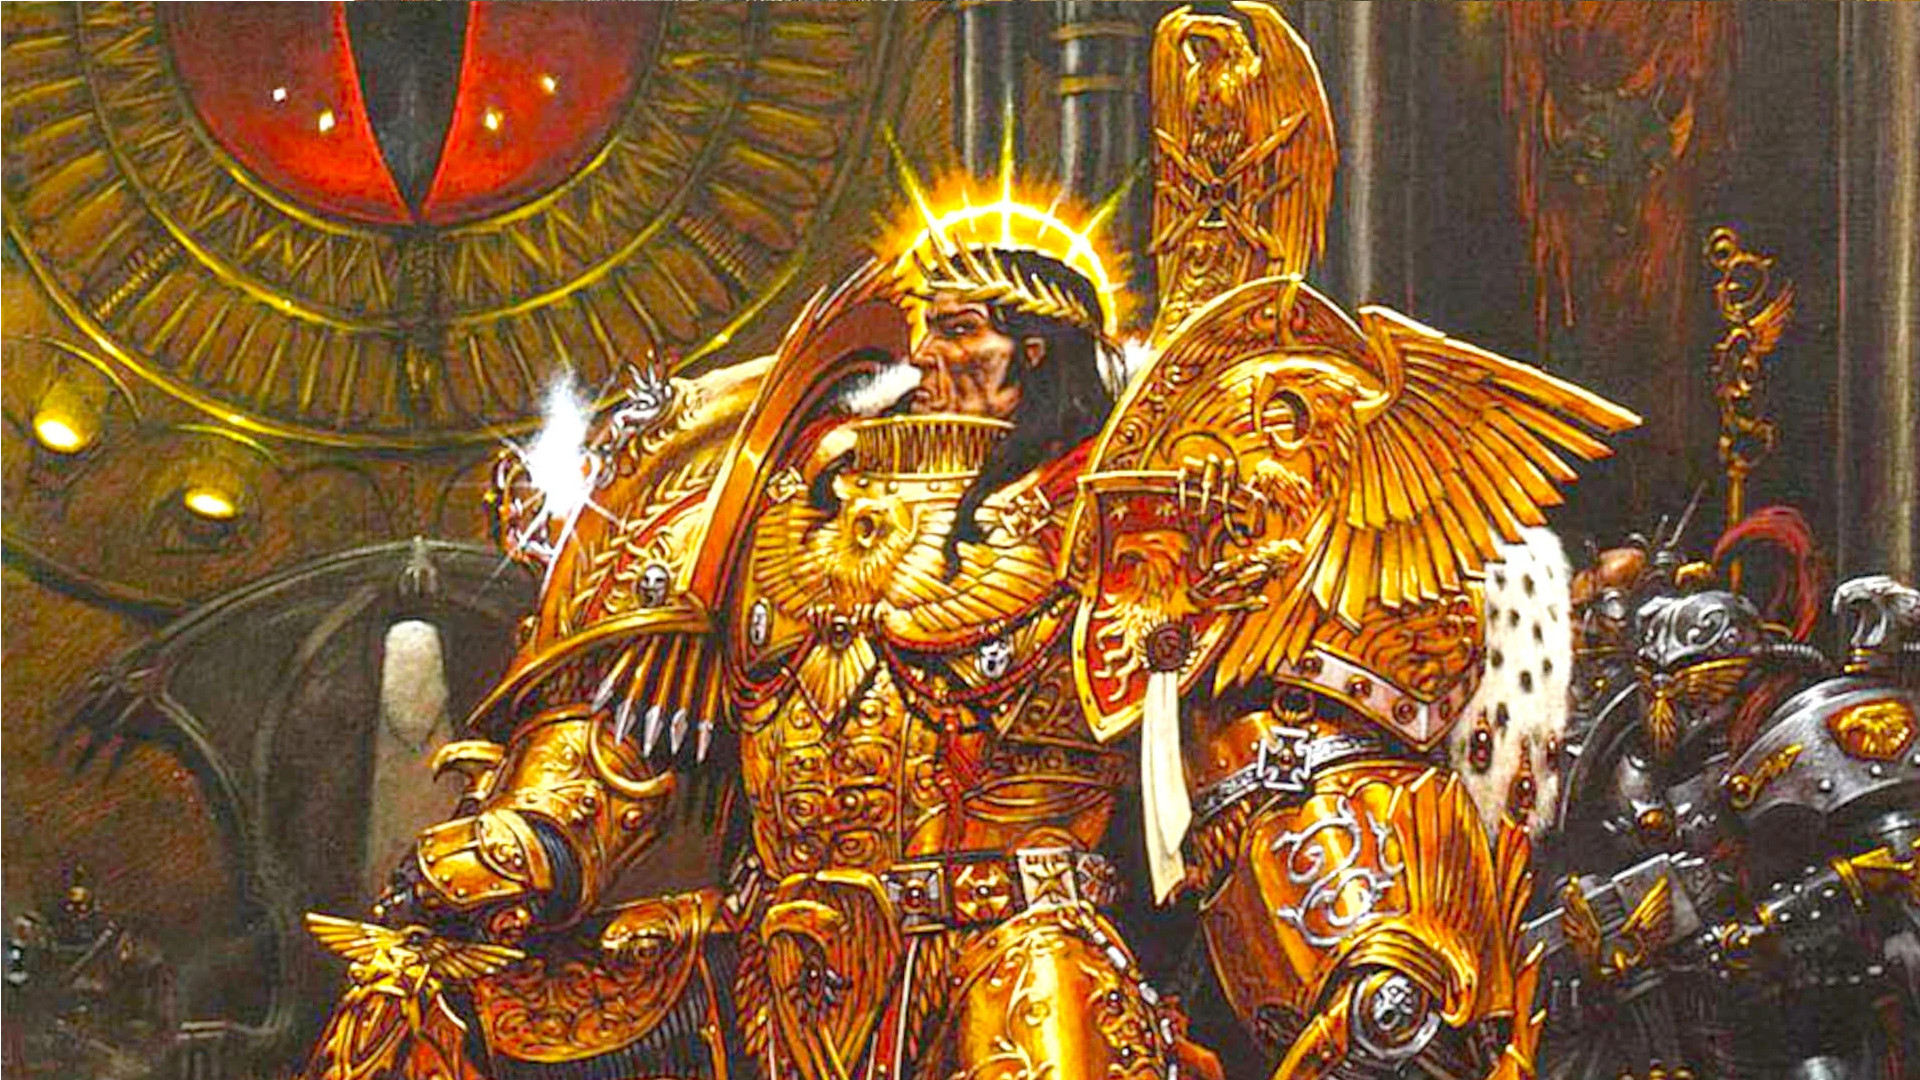 Warhammer 40k Henry Cavill Emperor Of Mankind Closeup 